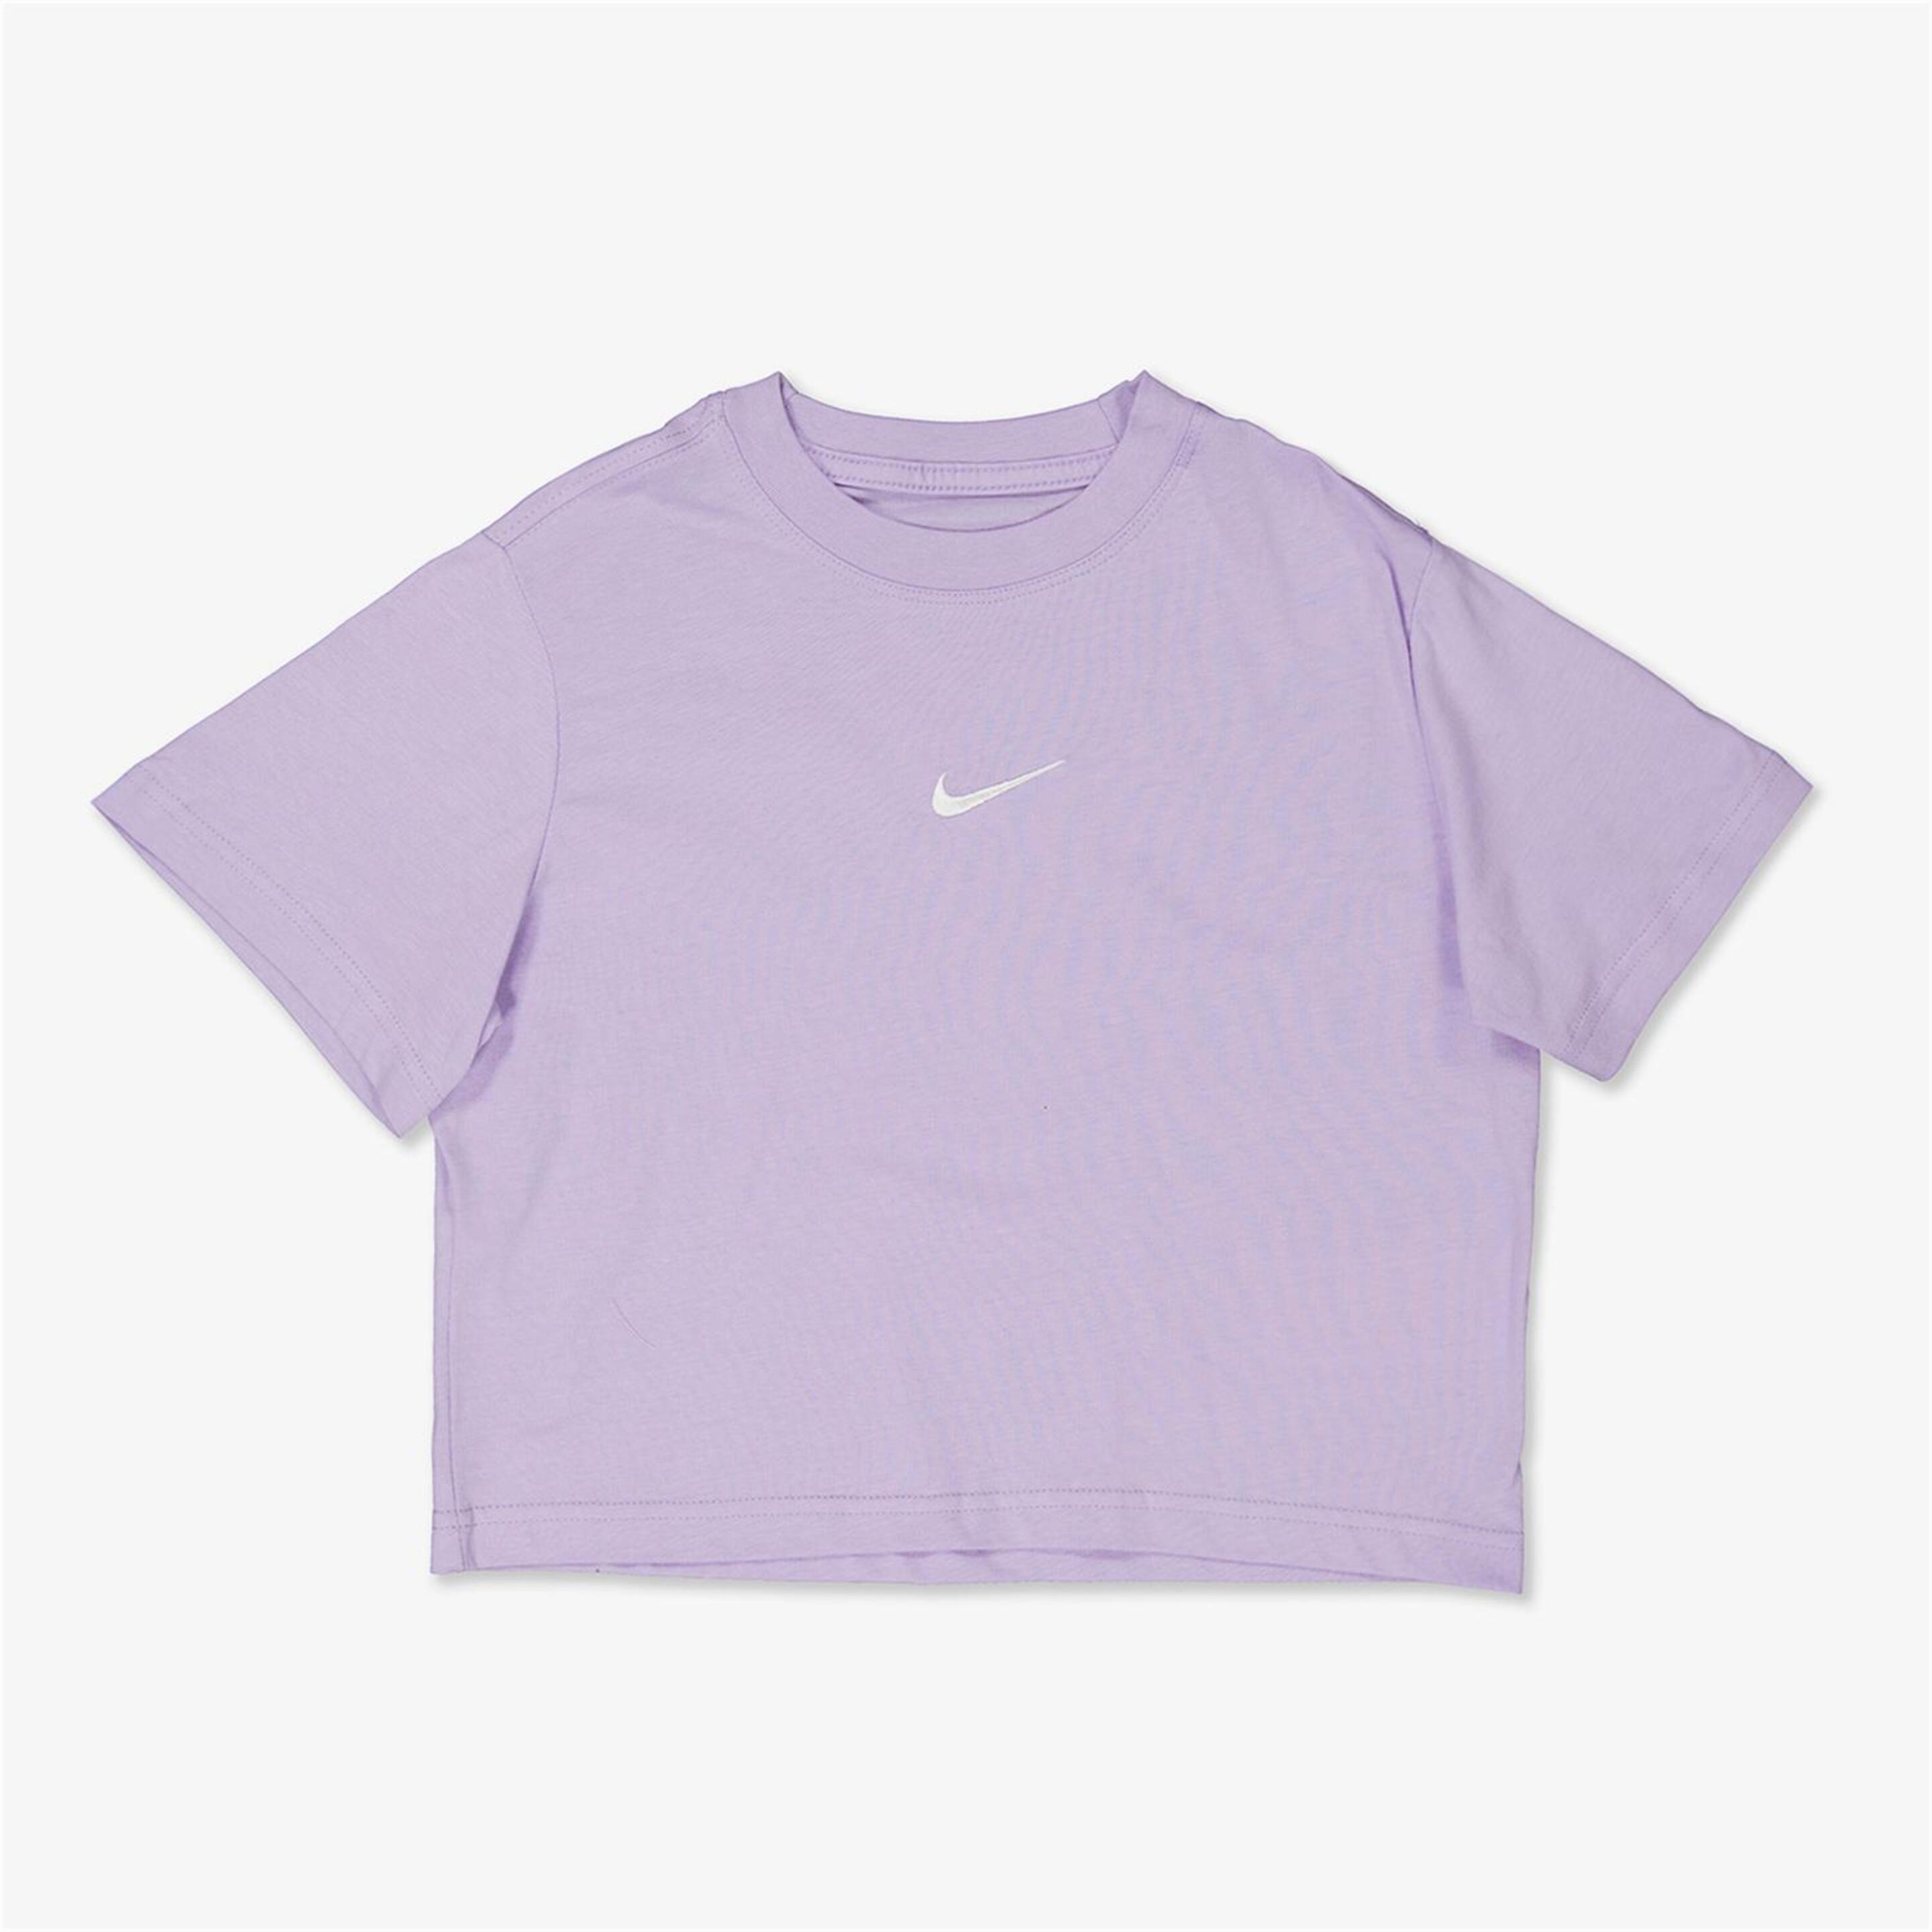 Camiseta Nike - morado - Camiseta Niña